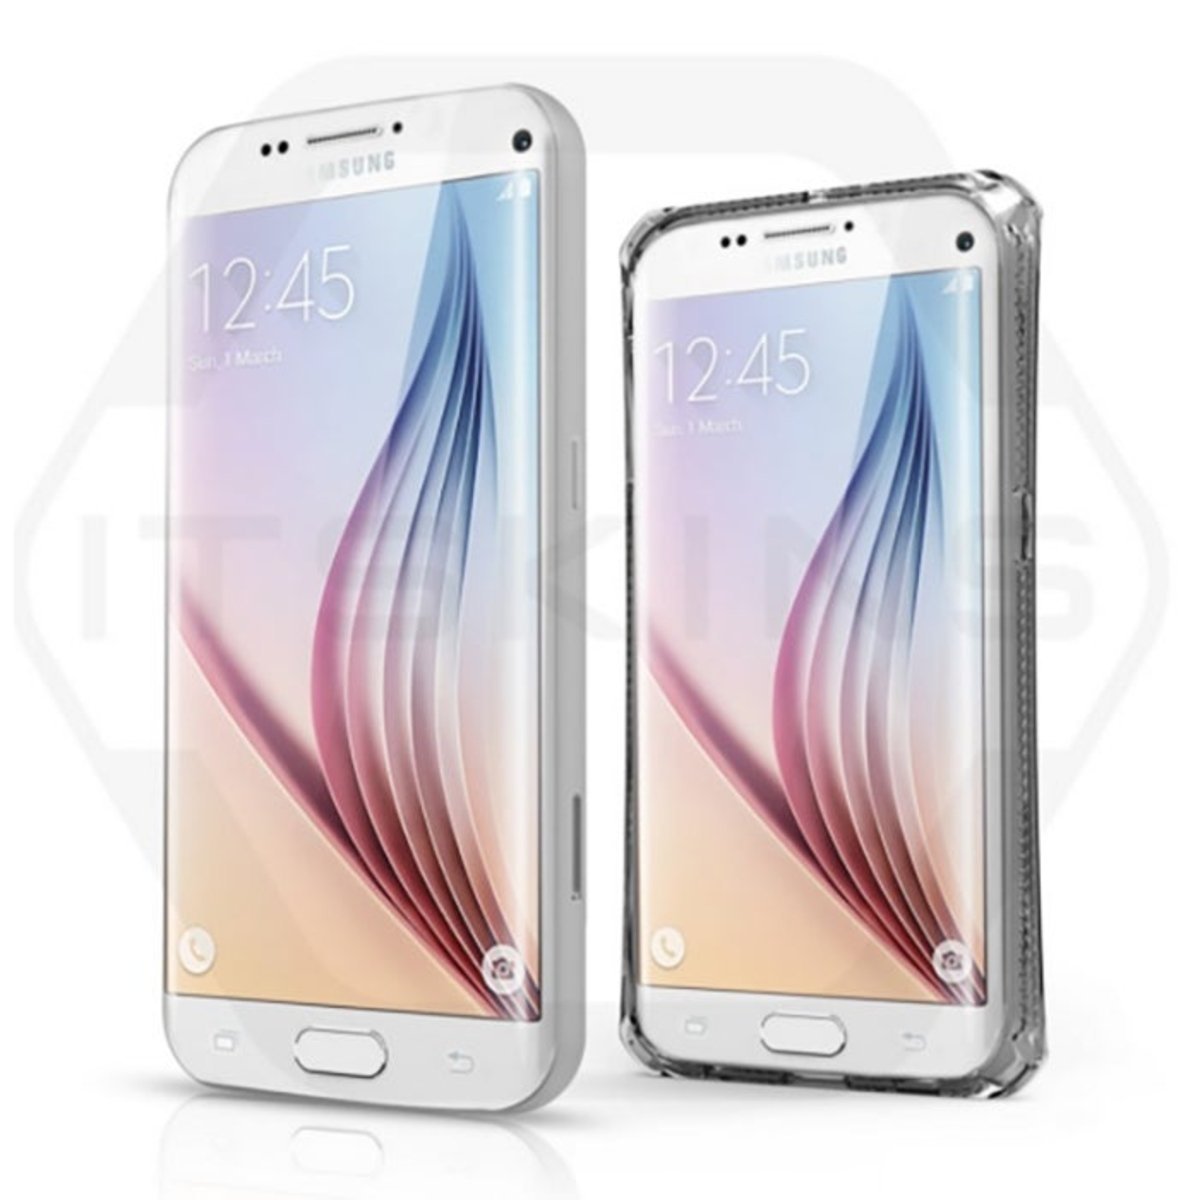 Samsung Galaxy S7 blanco